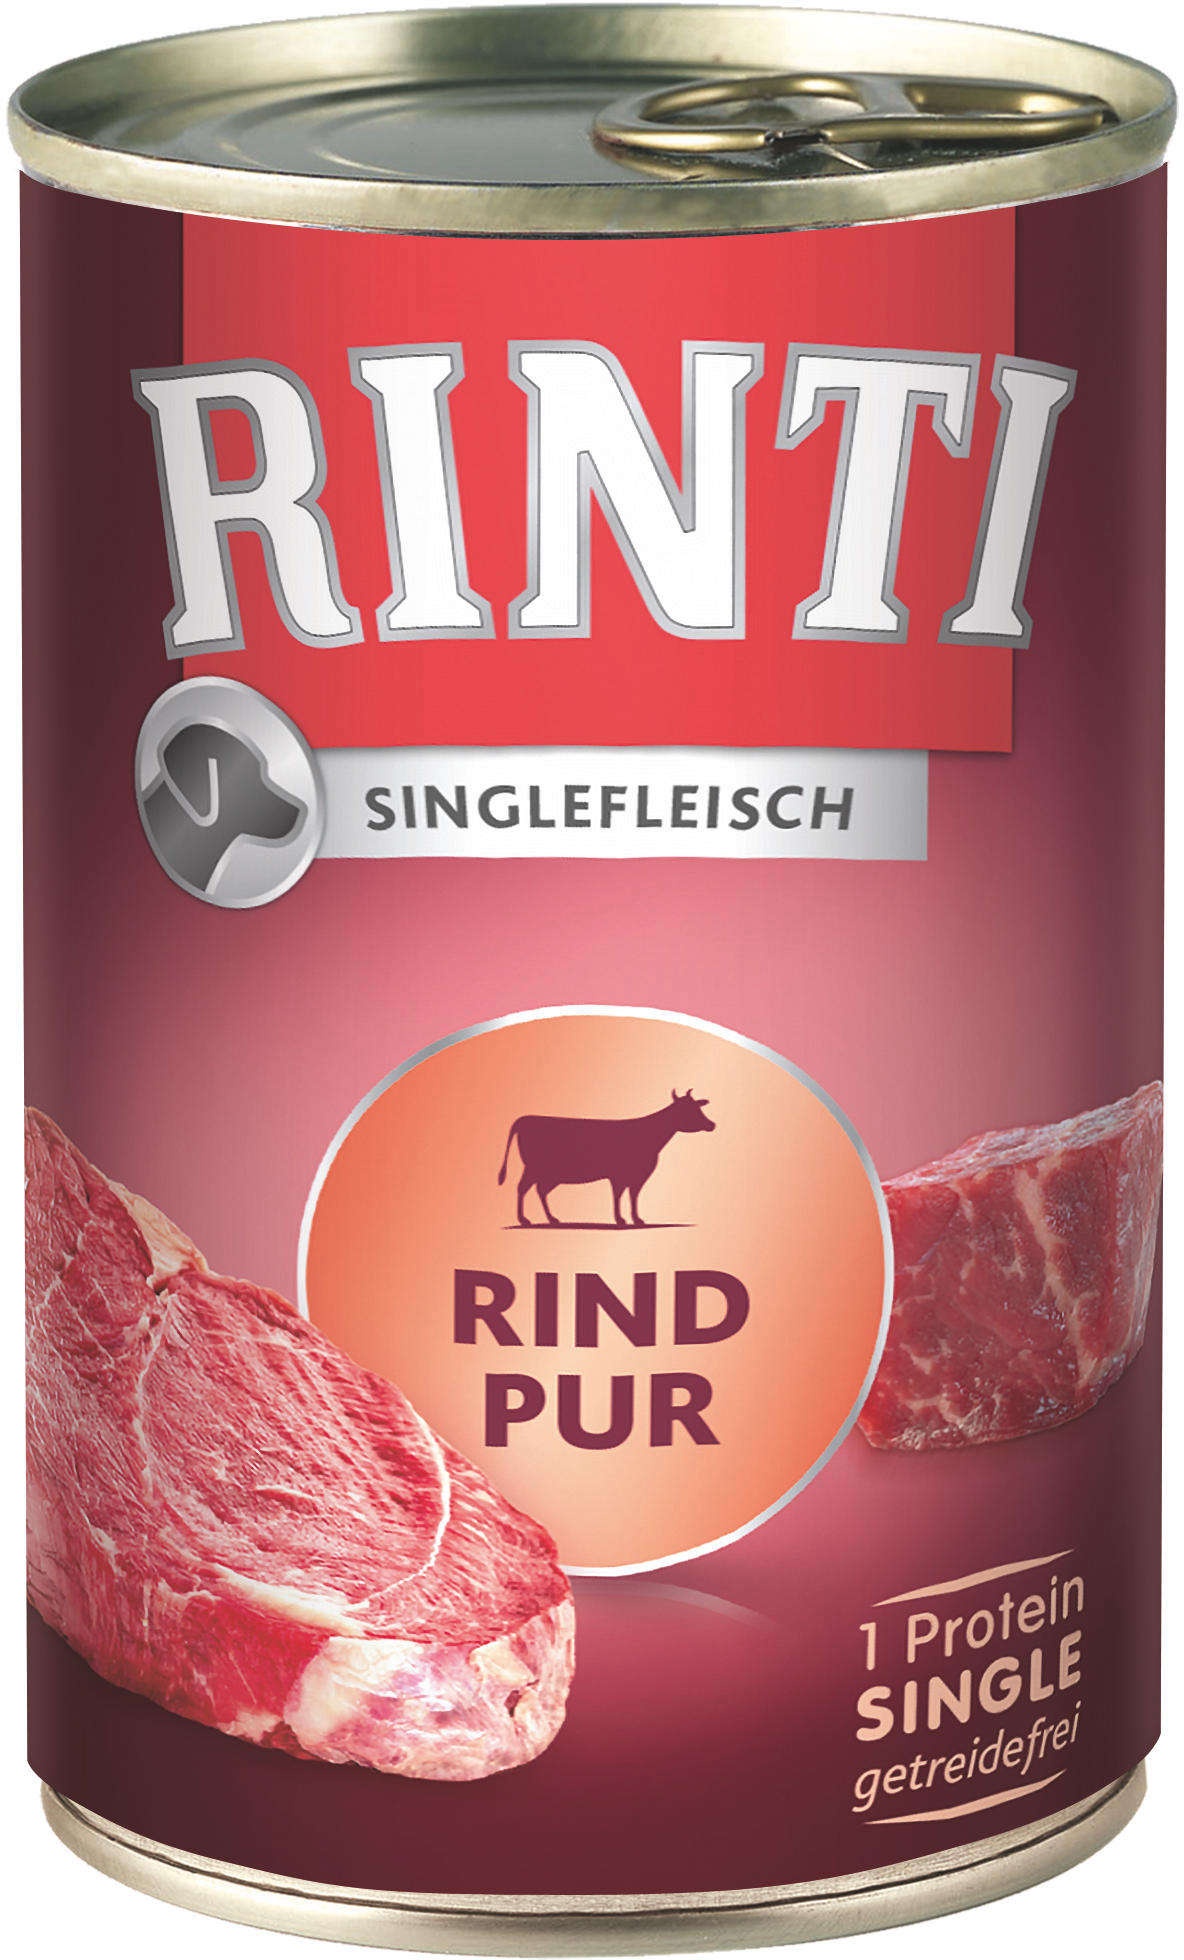 RINTI Hunde-Nassfutter Singlefleisch Pur Rind